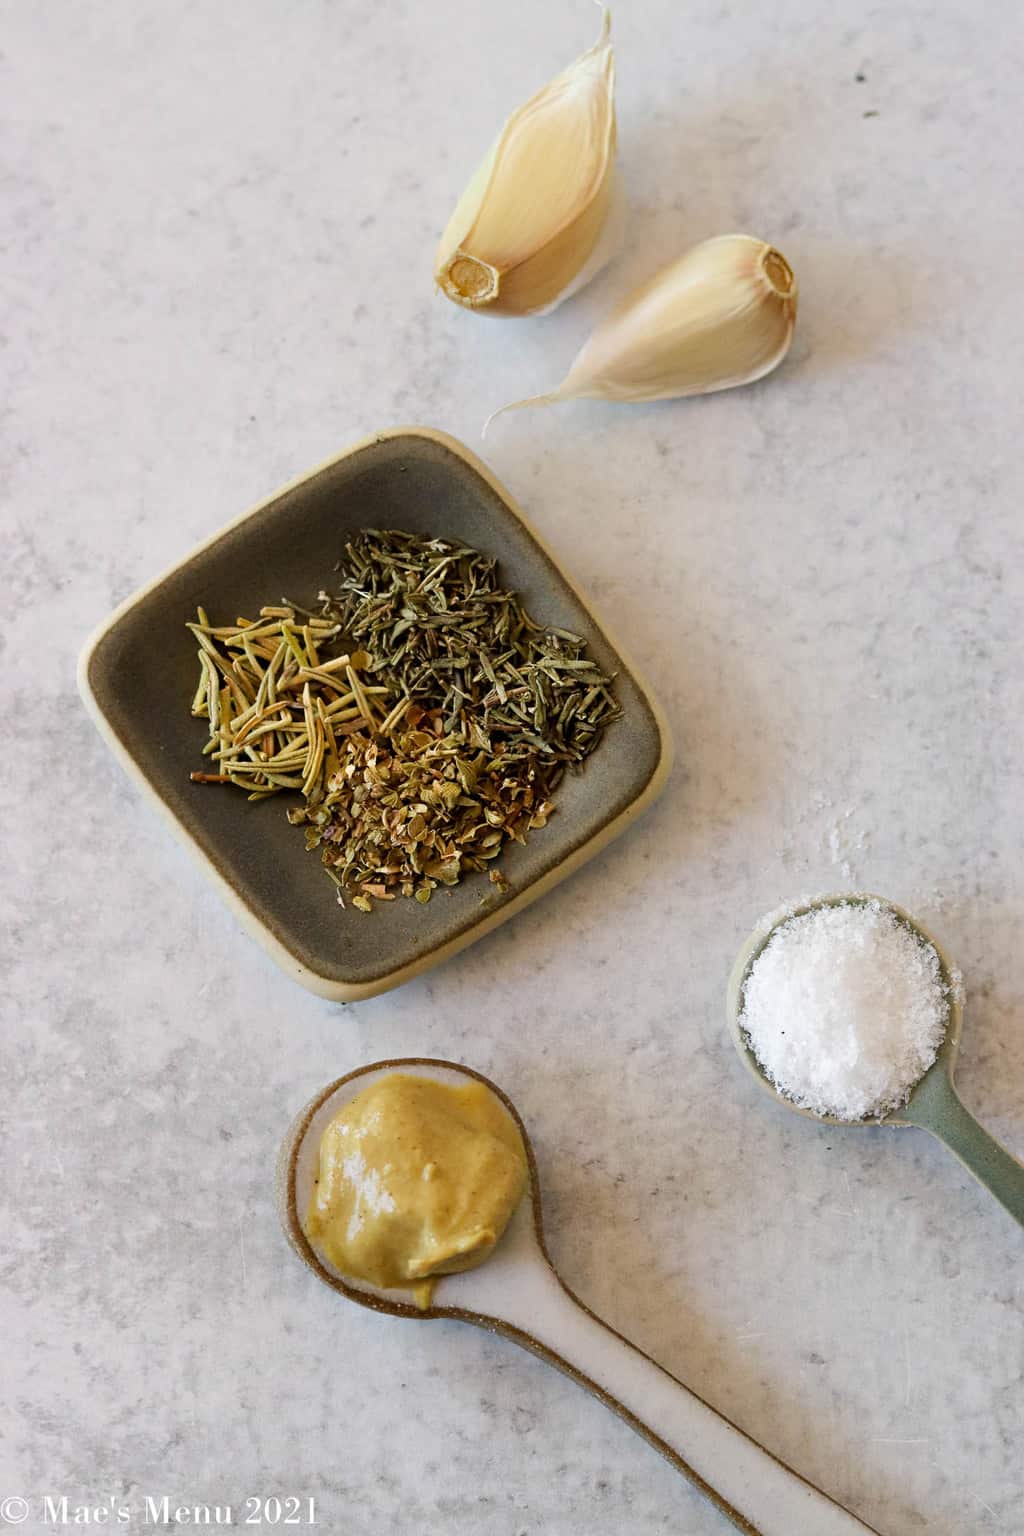 Garlic cloves, dried herbs, salt, and Dijon mustard